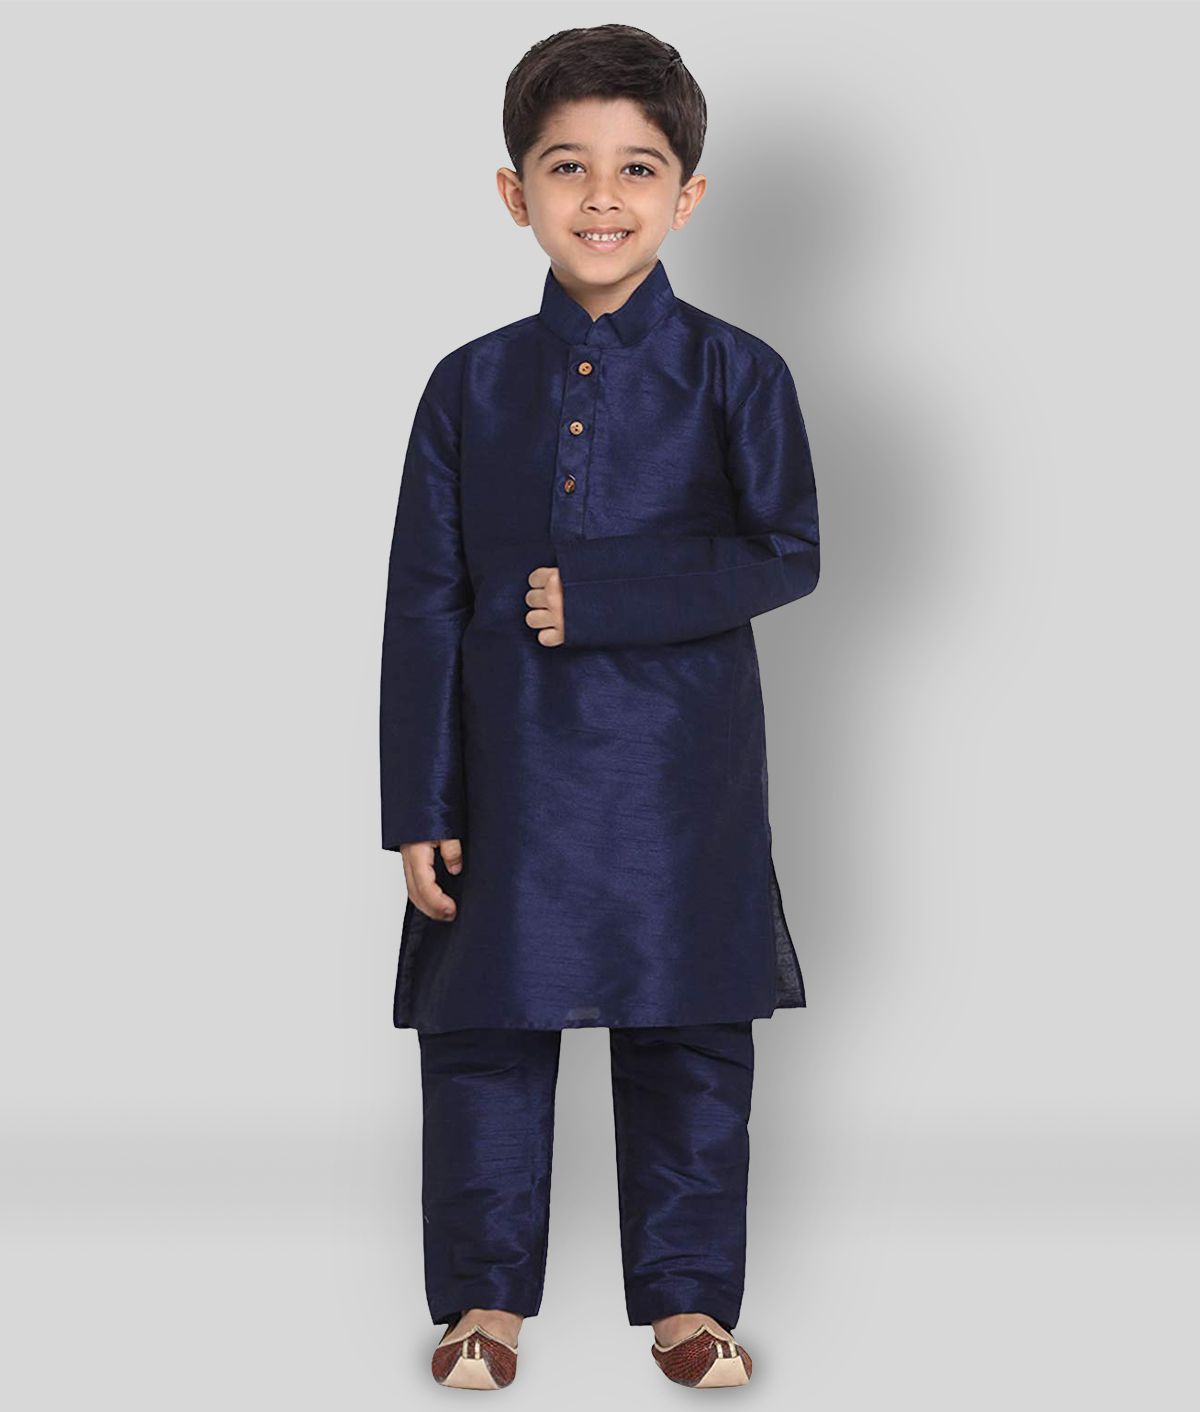     			Fourfolds Ethnic Wear Printed Kurta Pyjama Set For Kids & Boys_FE729